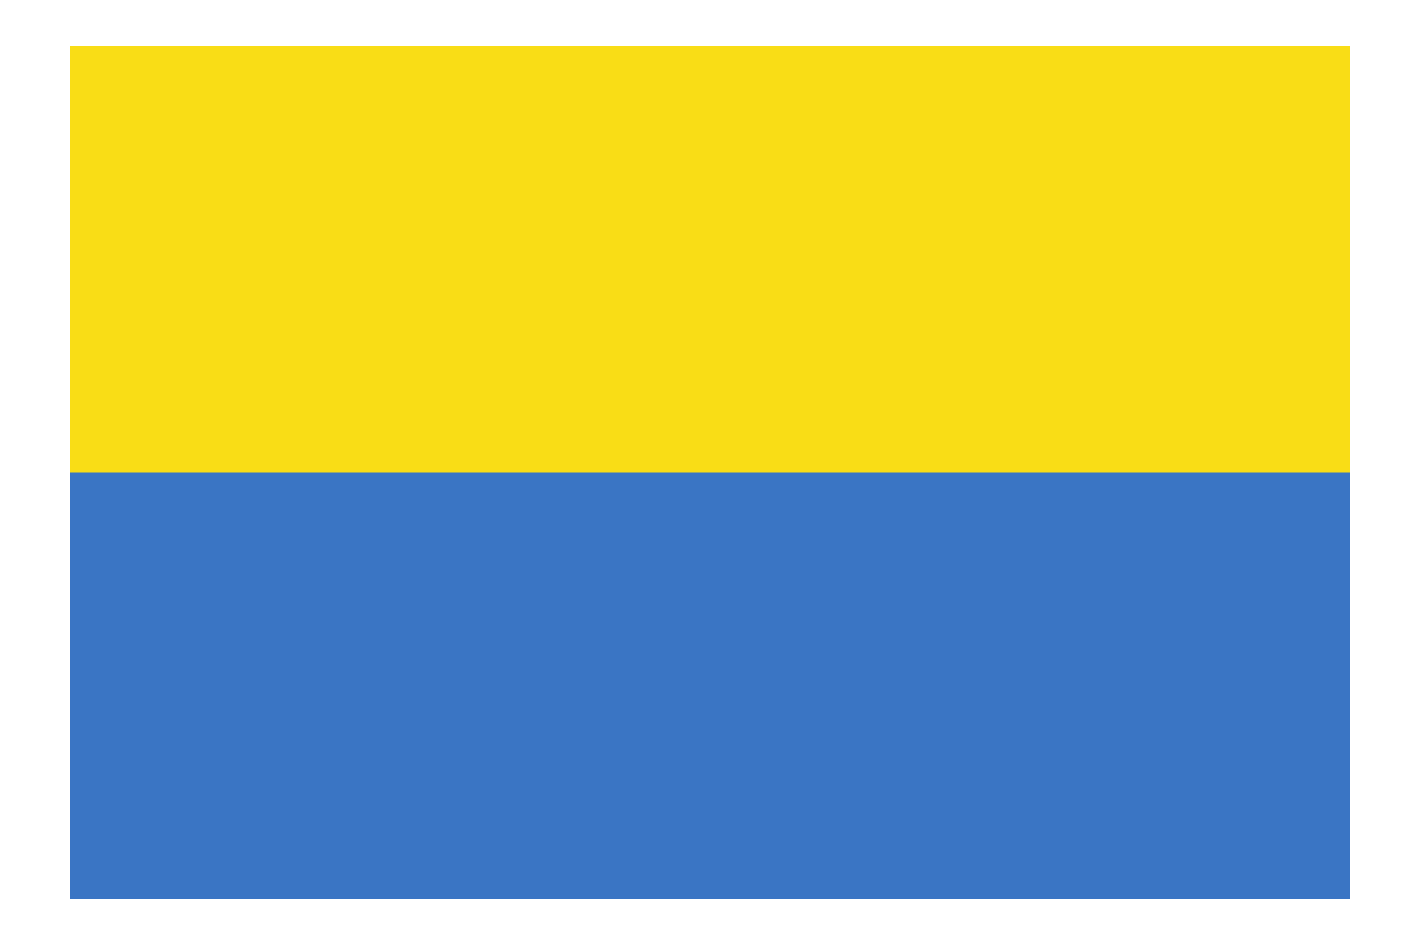 Ukraine Flag PNG Image in High Definition pngteam.com